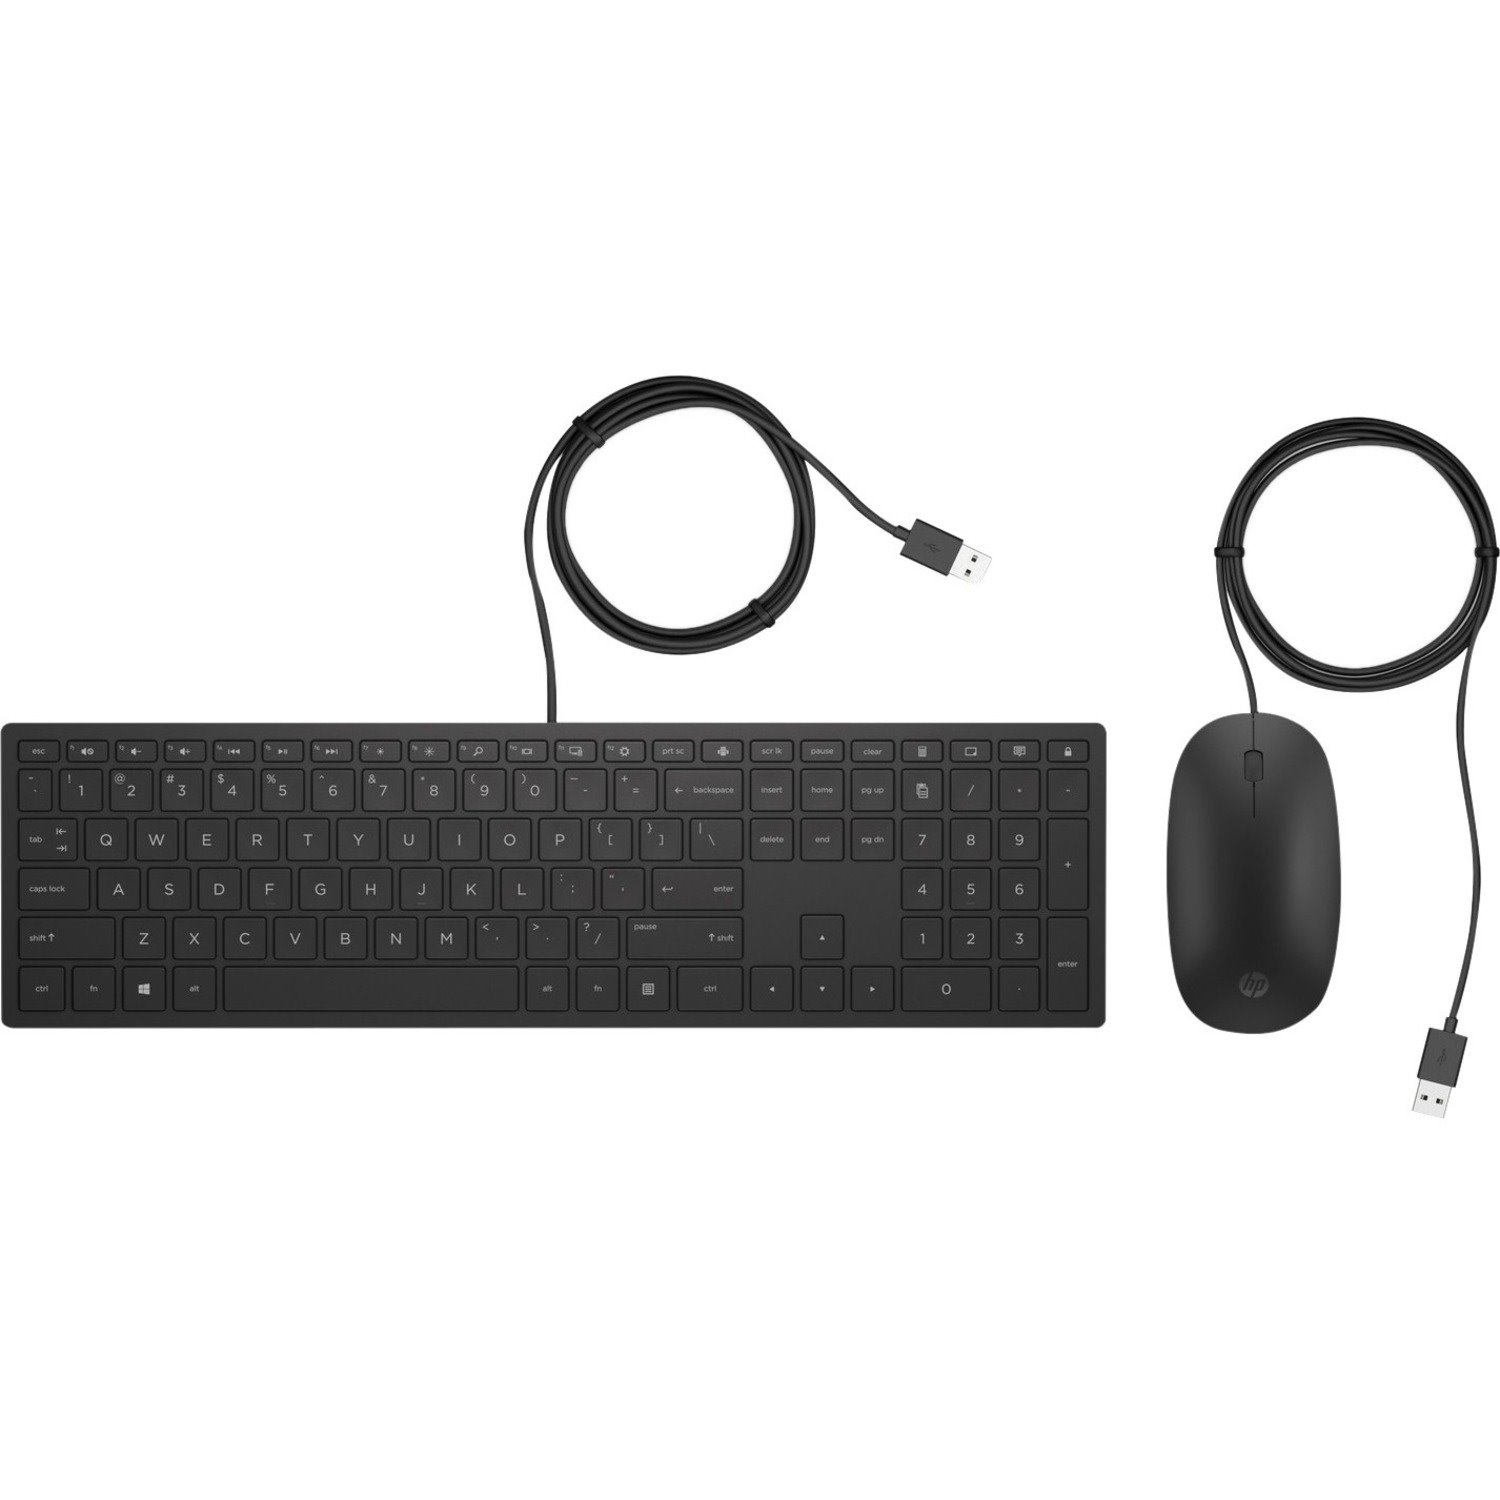 HP 400 Keyboard & Mouse - English (UK) - Retail